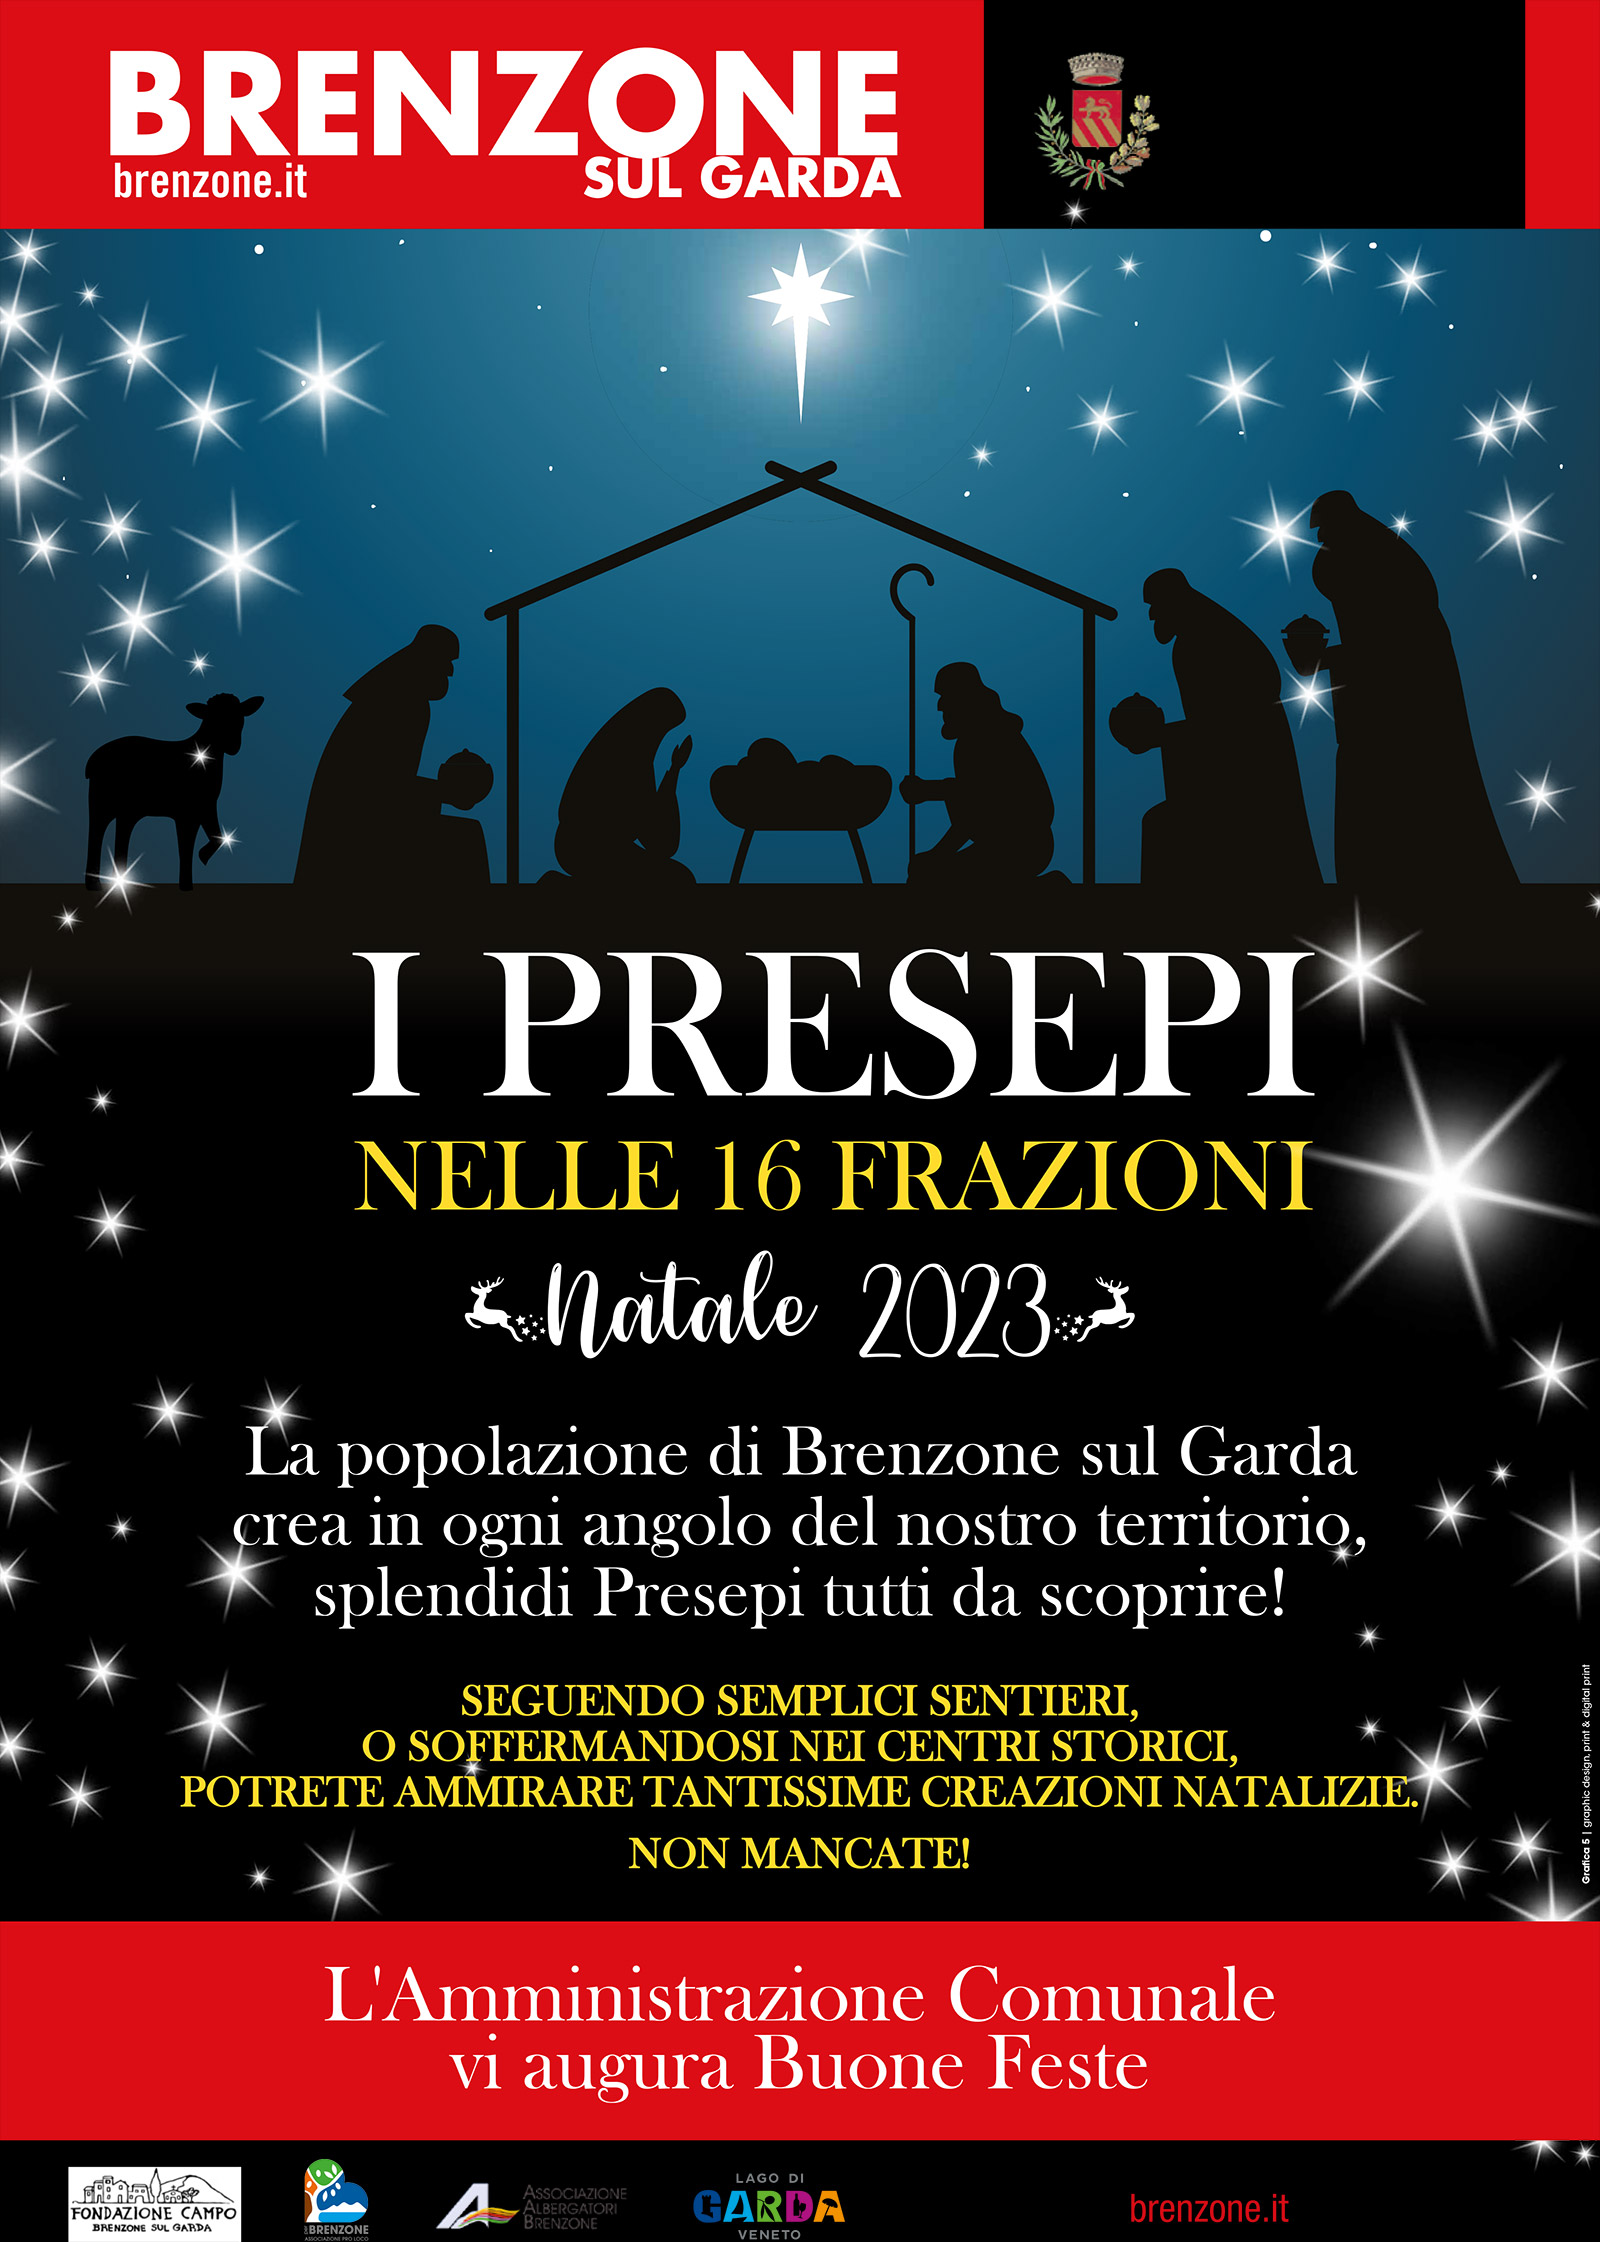 Brenzone sul Garda: Mostra di presepi - Krippenausstellung - Nativity scene exhibition